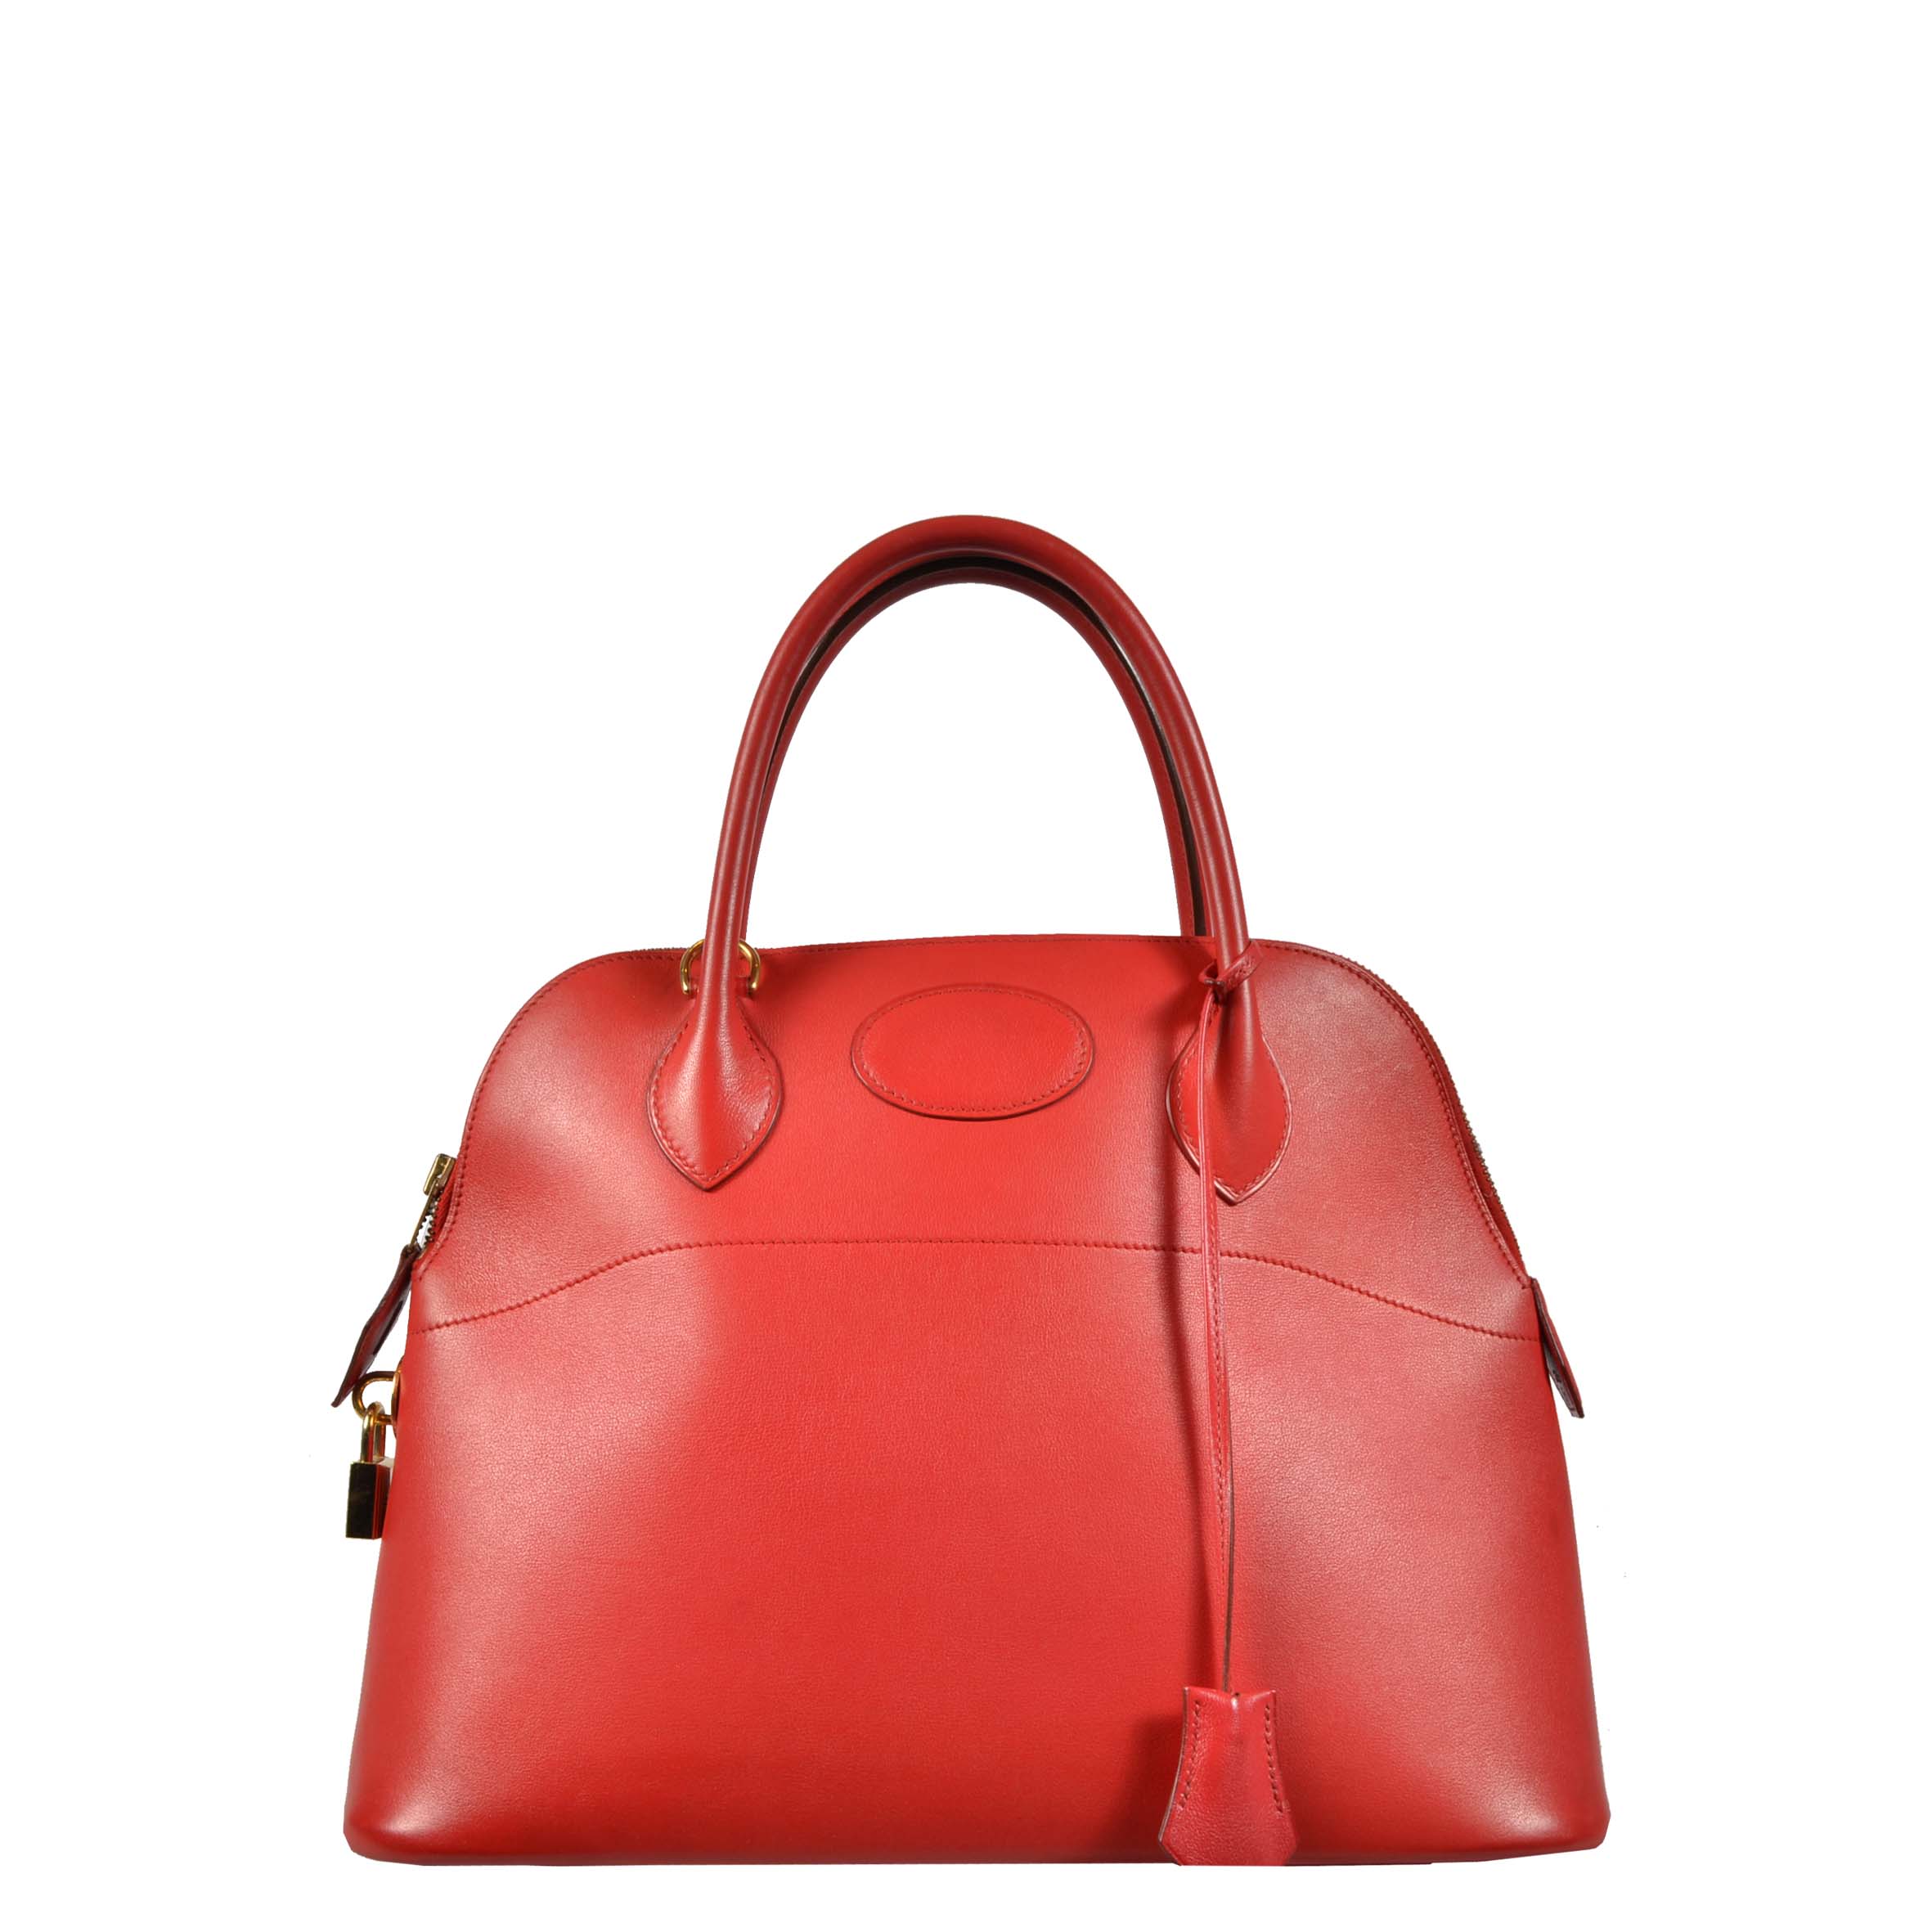 Hermes Tasche Bolide Rot red bag